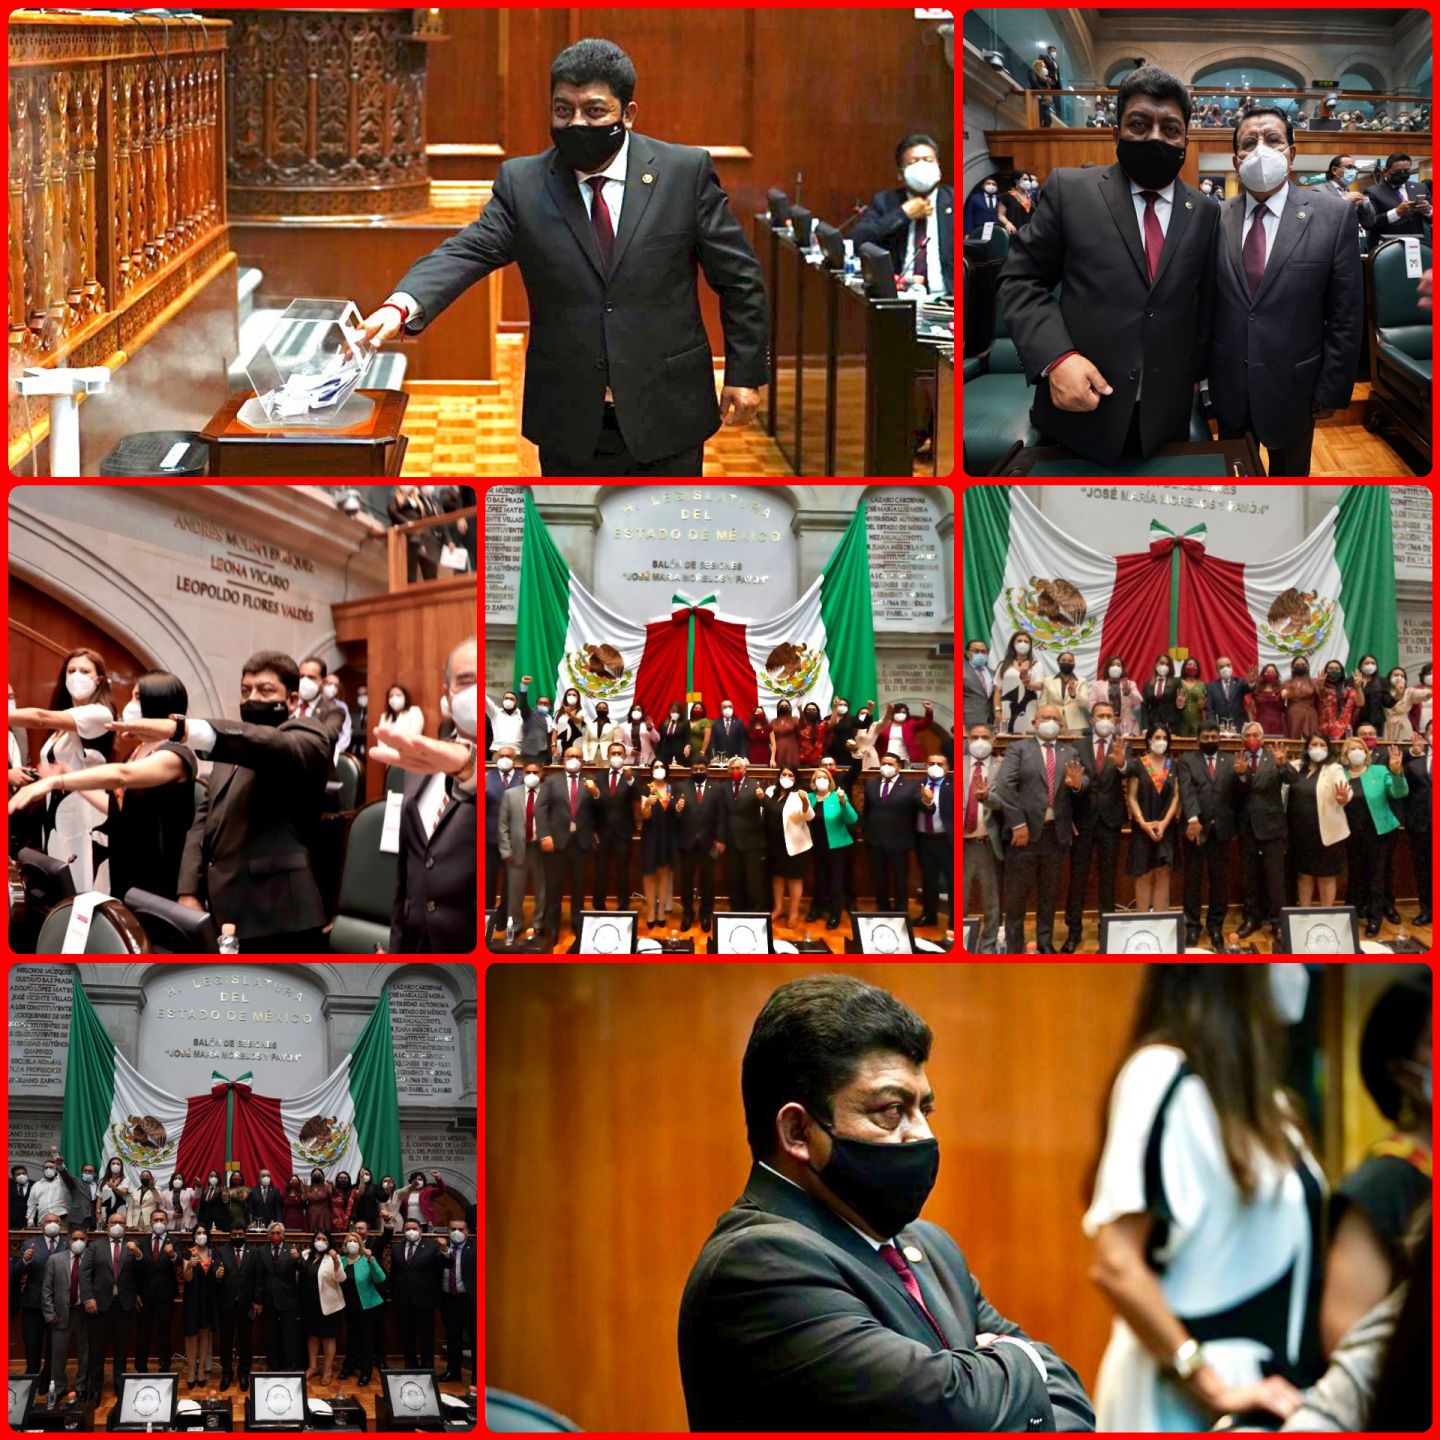 Inicia labores legislativas en el congreso Local mexiquense:Dip Nazario Gutiérrez Martínez 